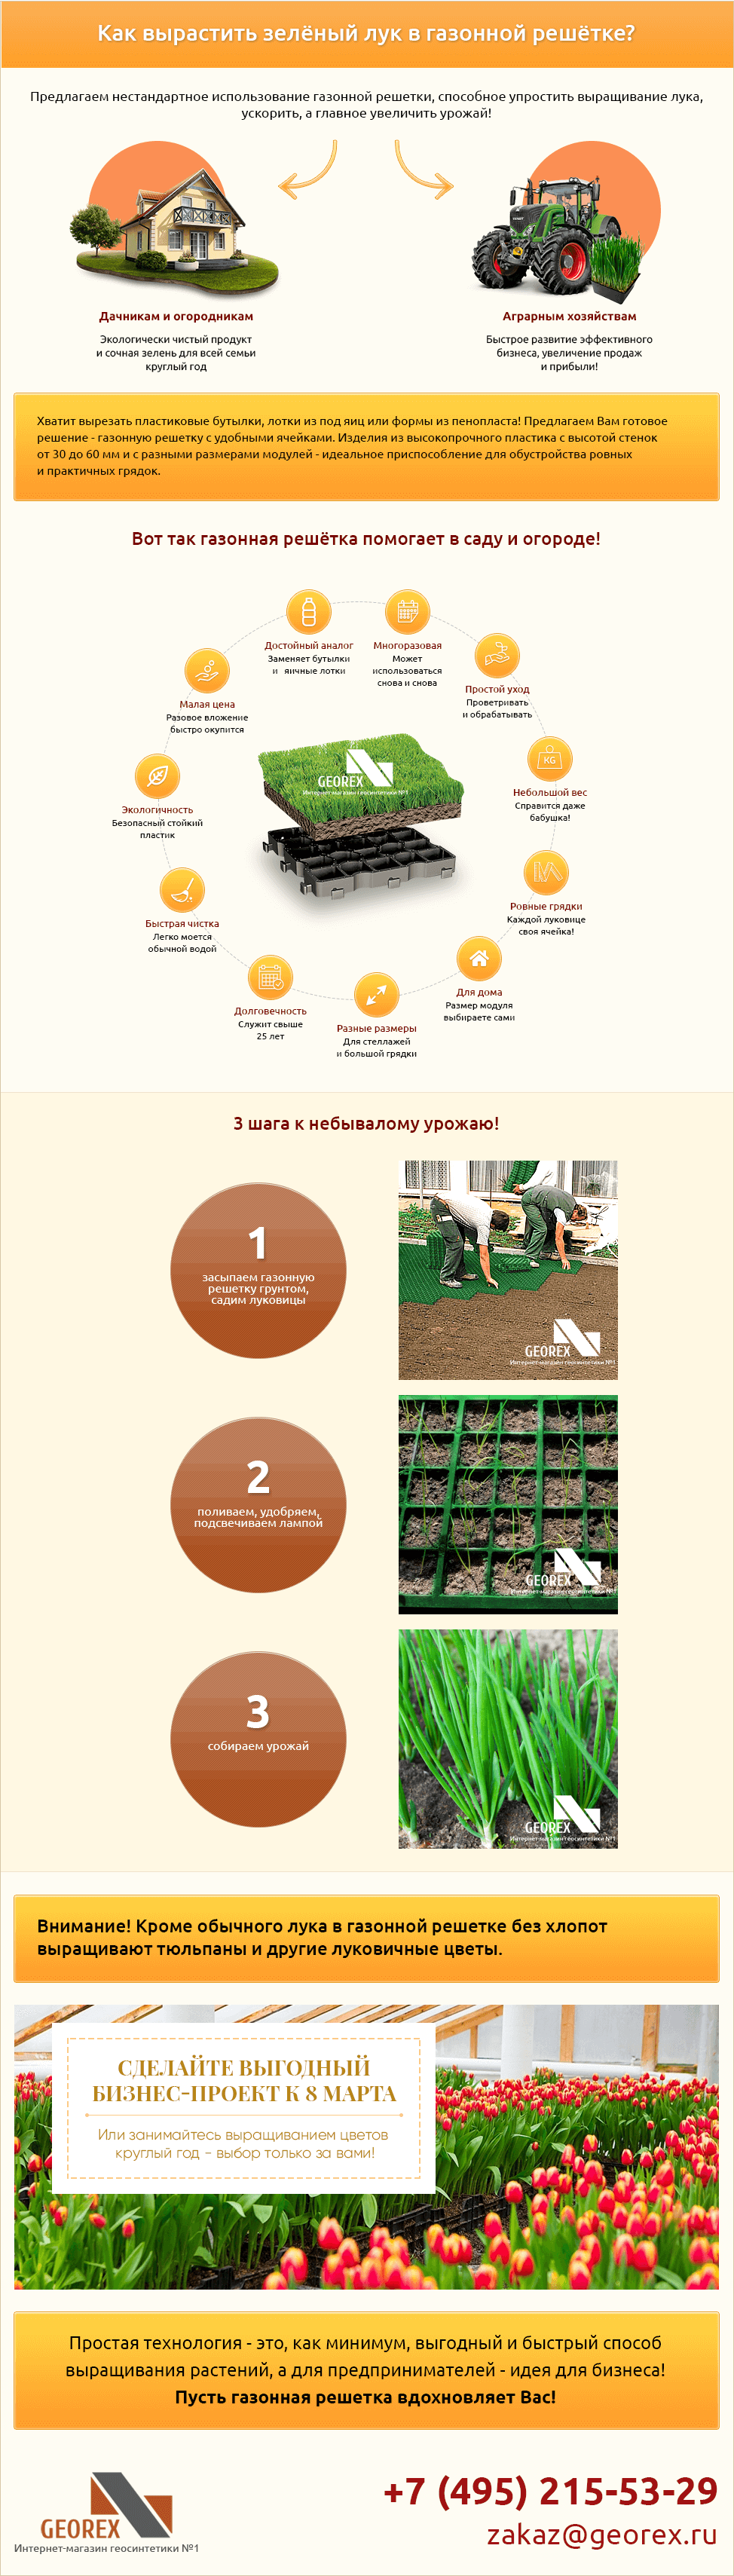 выращивание лука в газонной решетке. фото